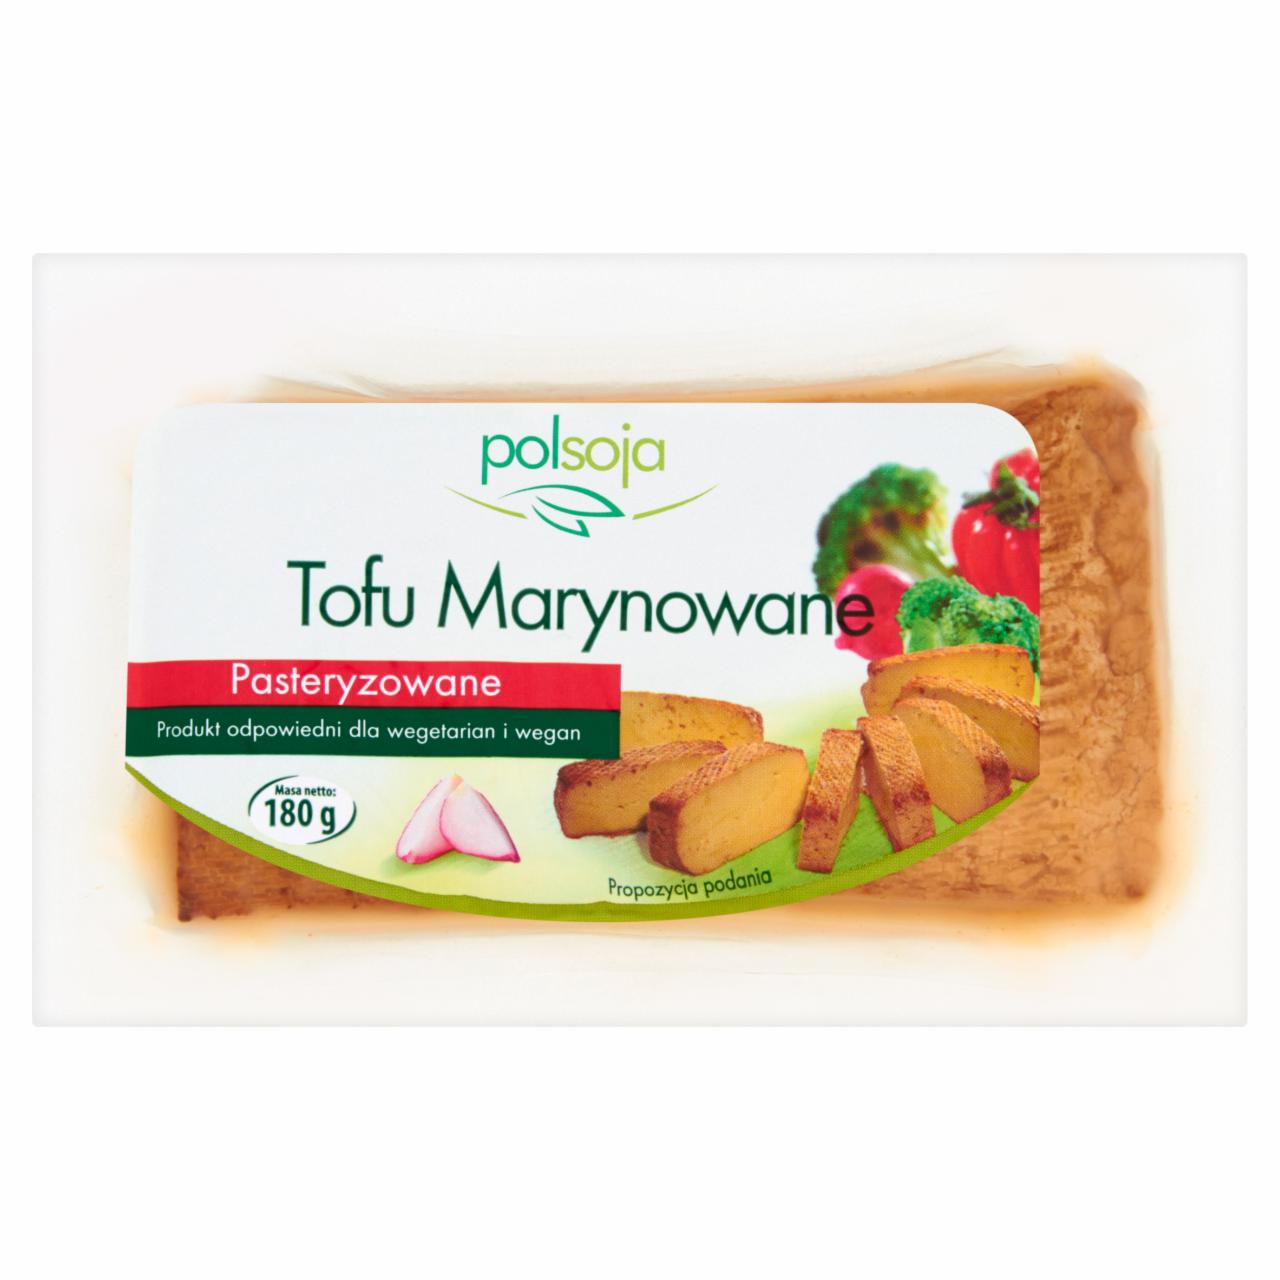 Zdjęcia - Polsoja Tofu marynowane pasteryzowane 180 g